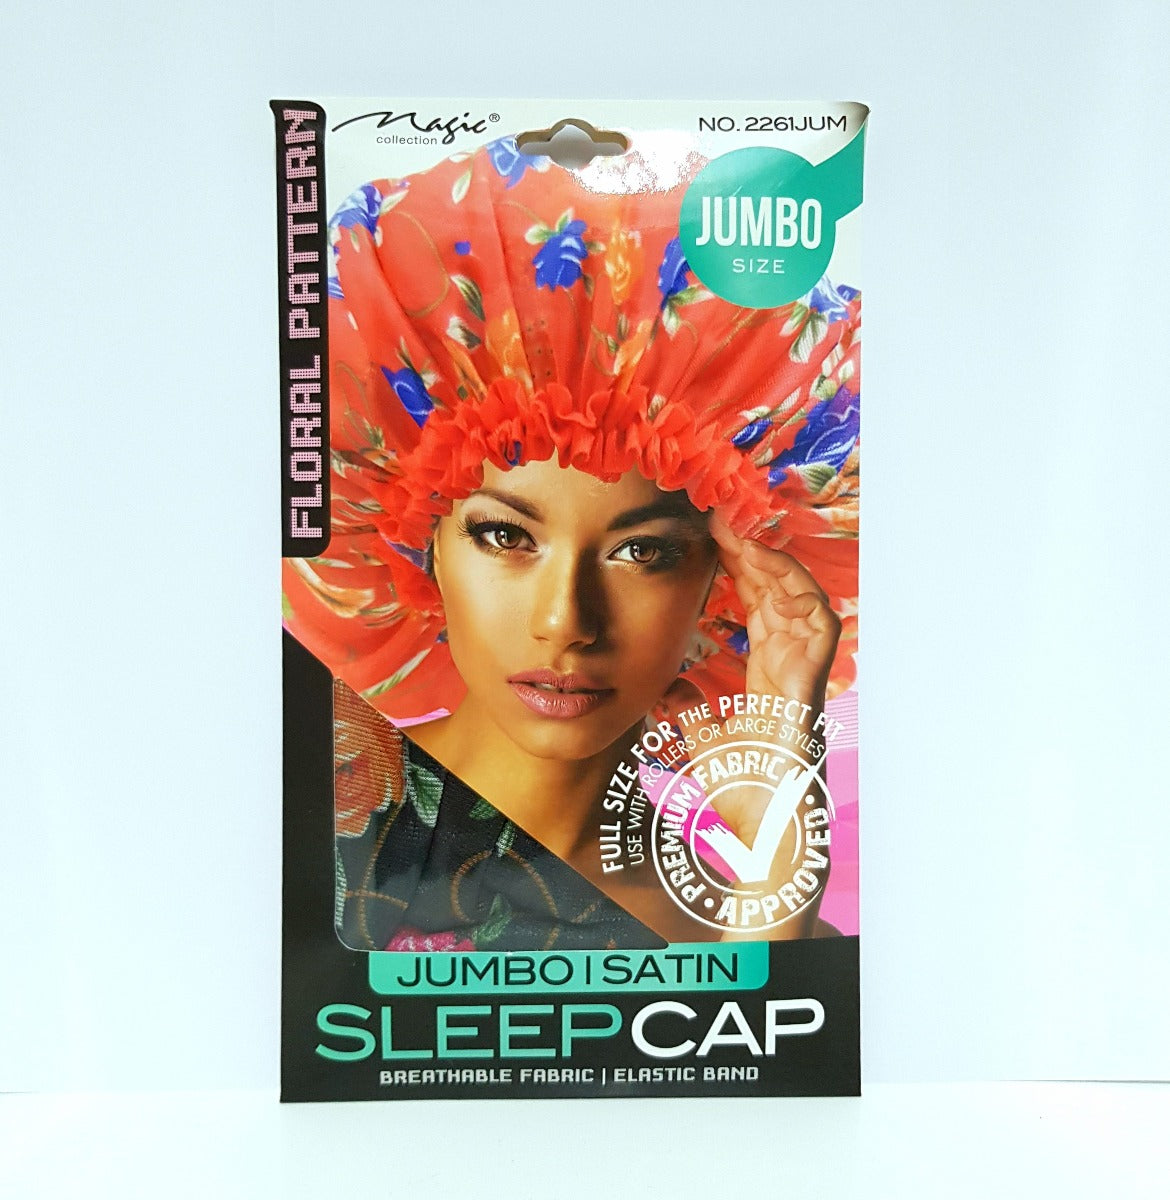 Magic Collection Jumbo Satin Sleep Cap No. 2261Jum